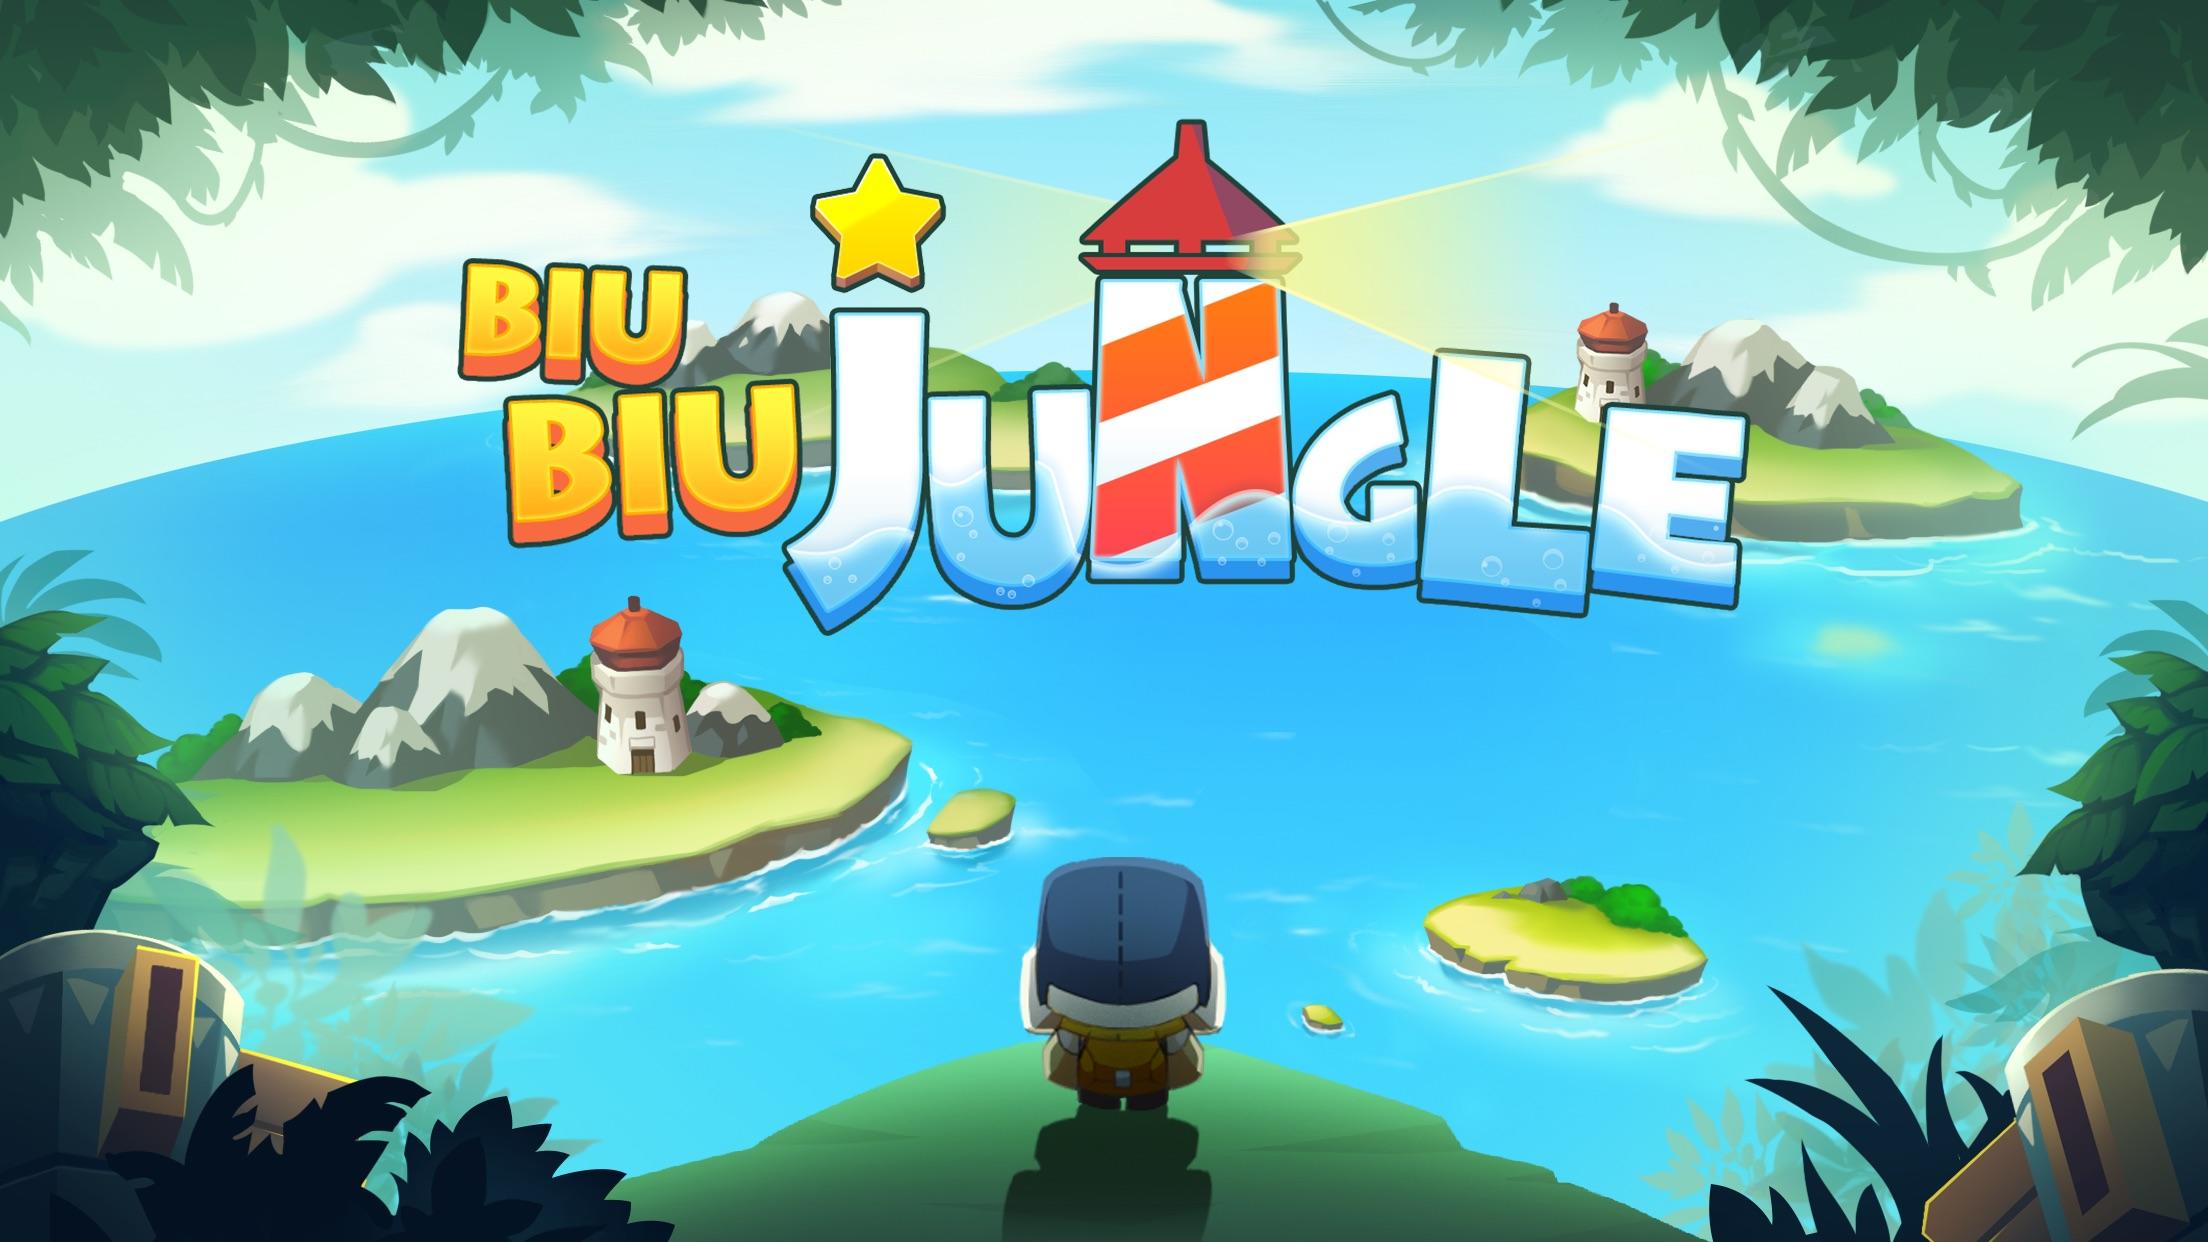 Screenshot 1 of BiuBiu Jungle Puzzle 